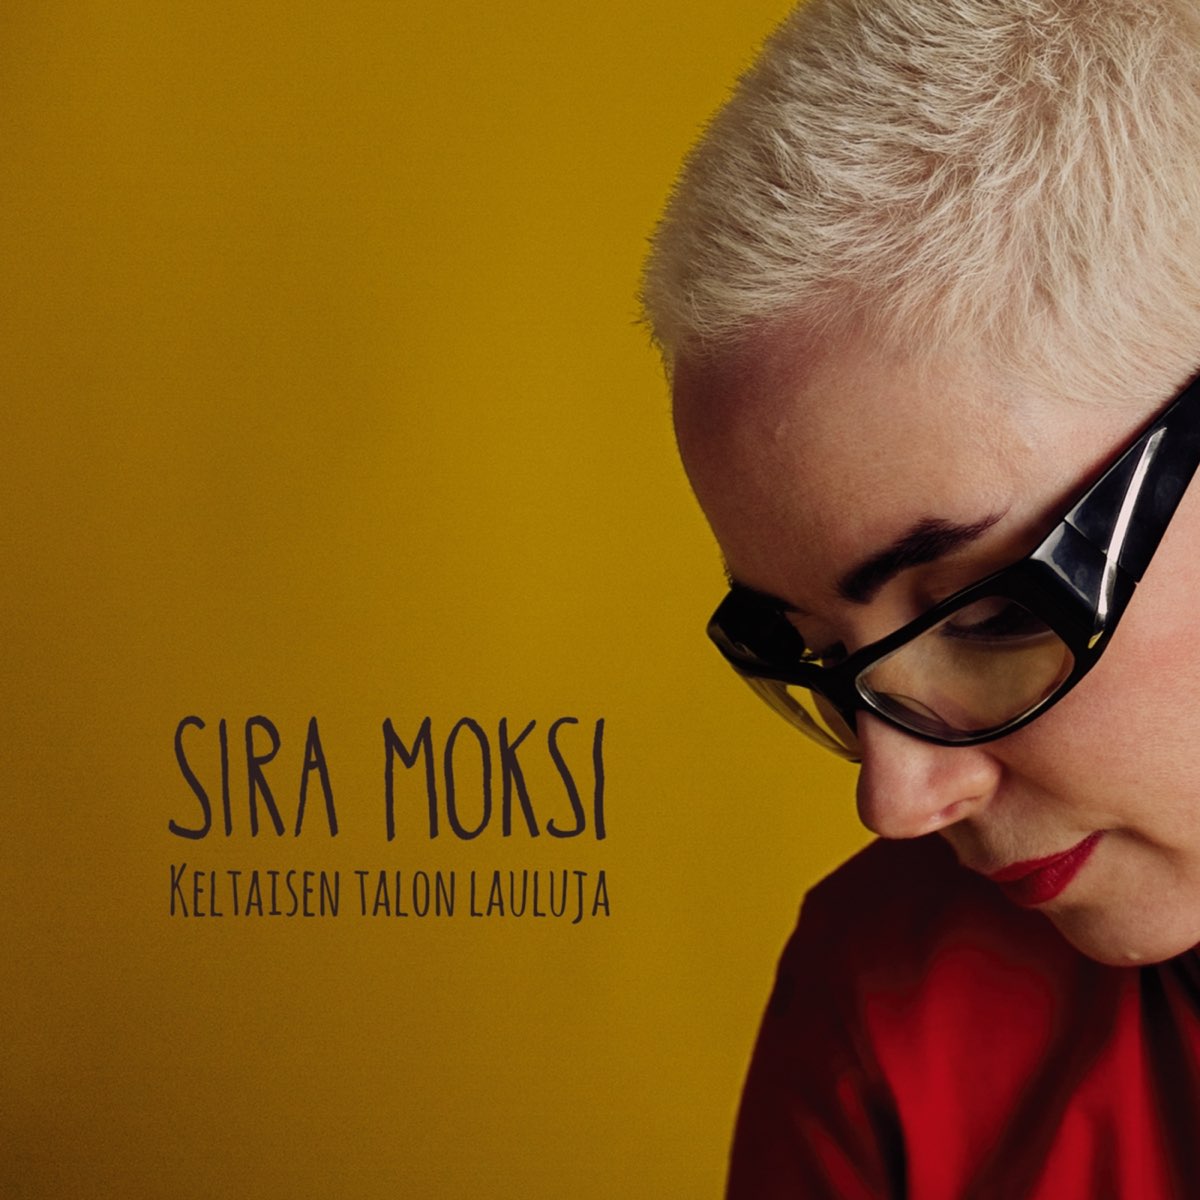 Keltaisen Talon Lauluja by Sira Moksi on Apple Music